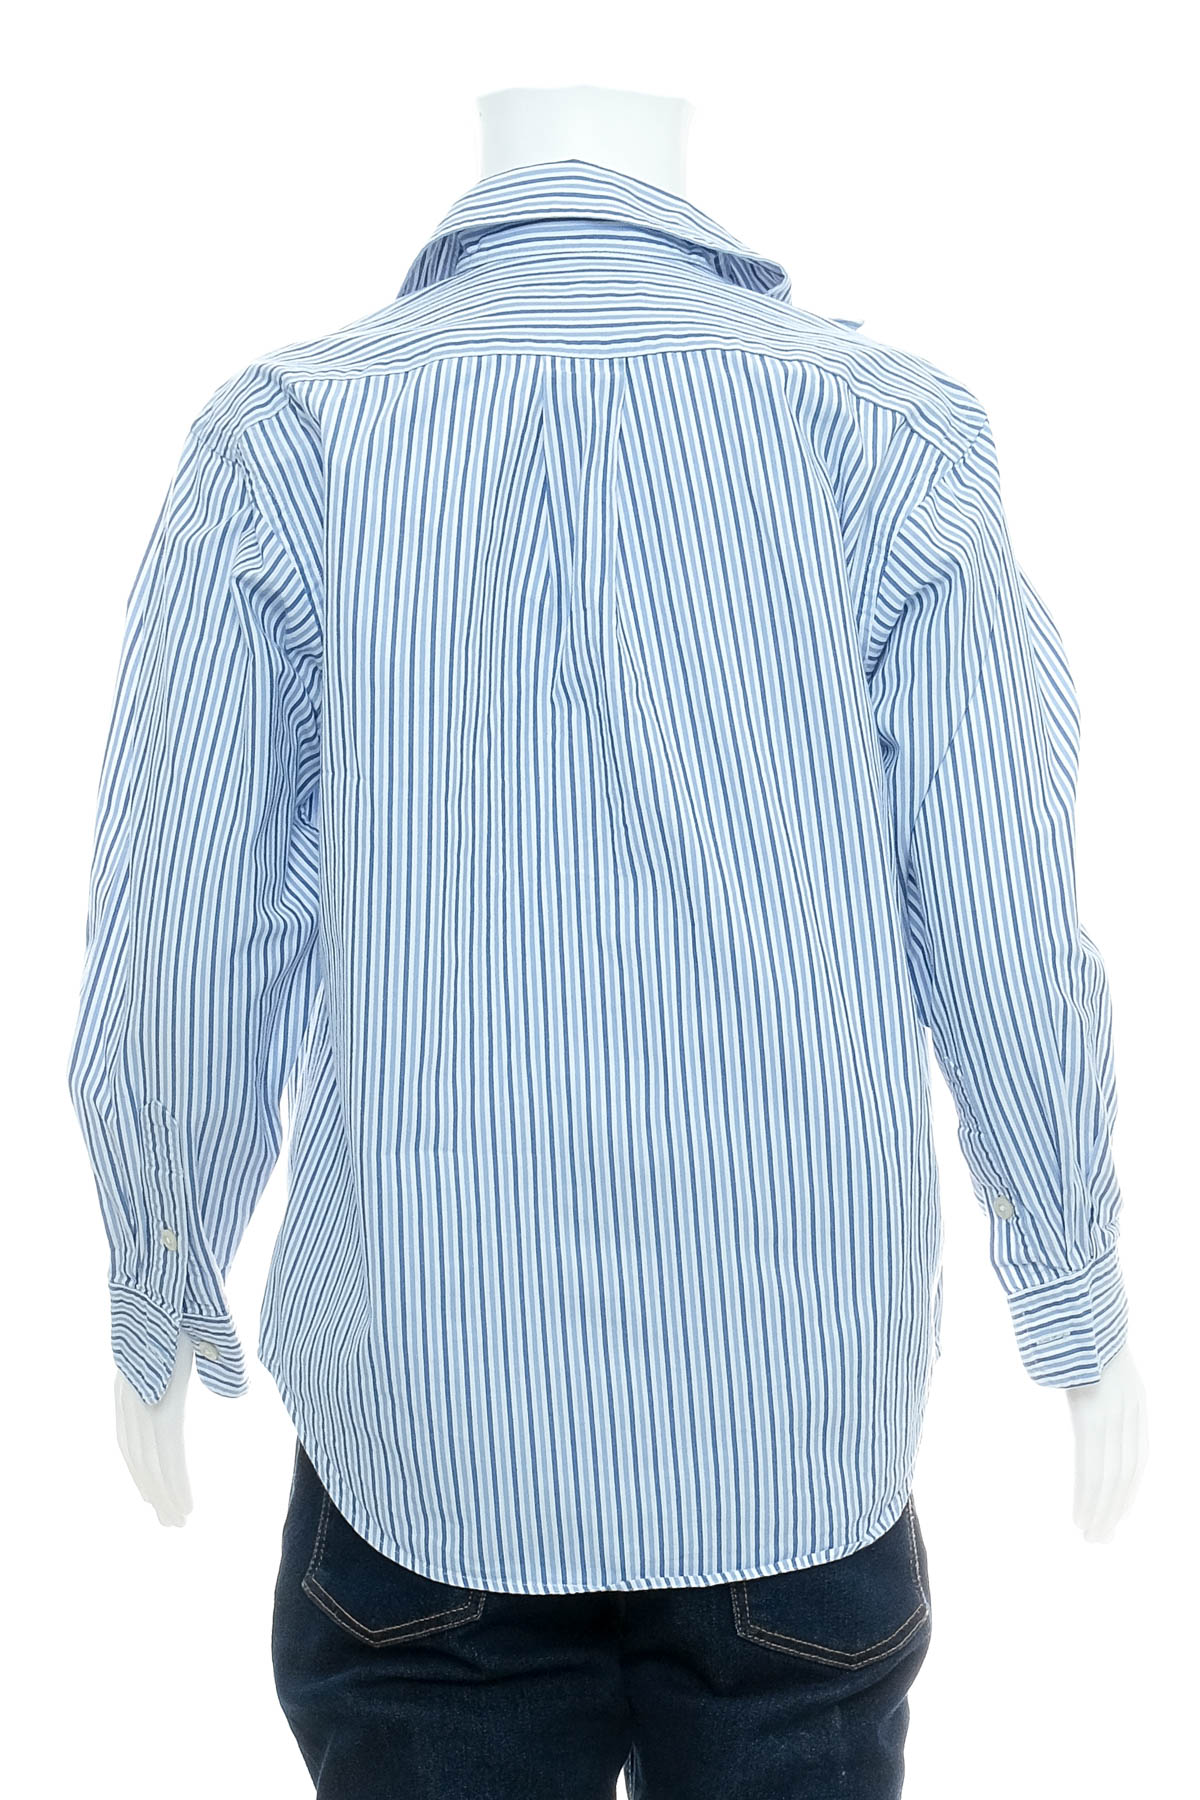 Koszula dla chłopca - Polo by Ralph Lauren - 1